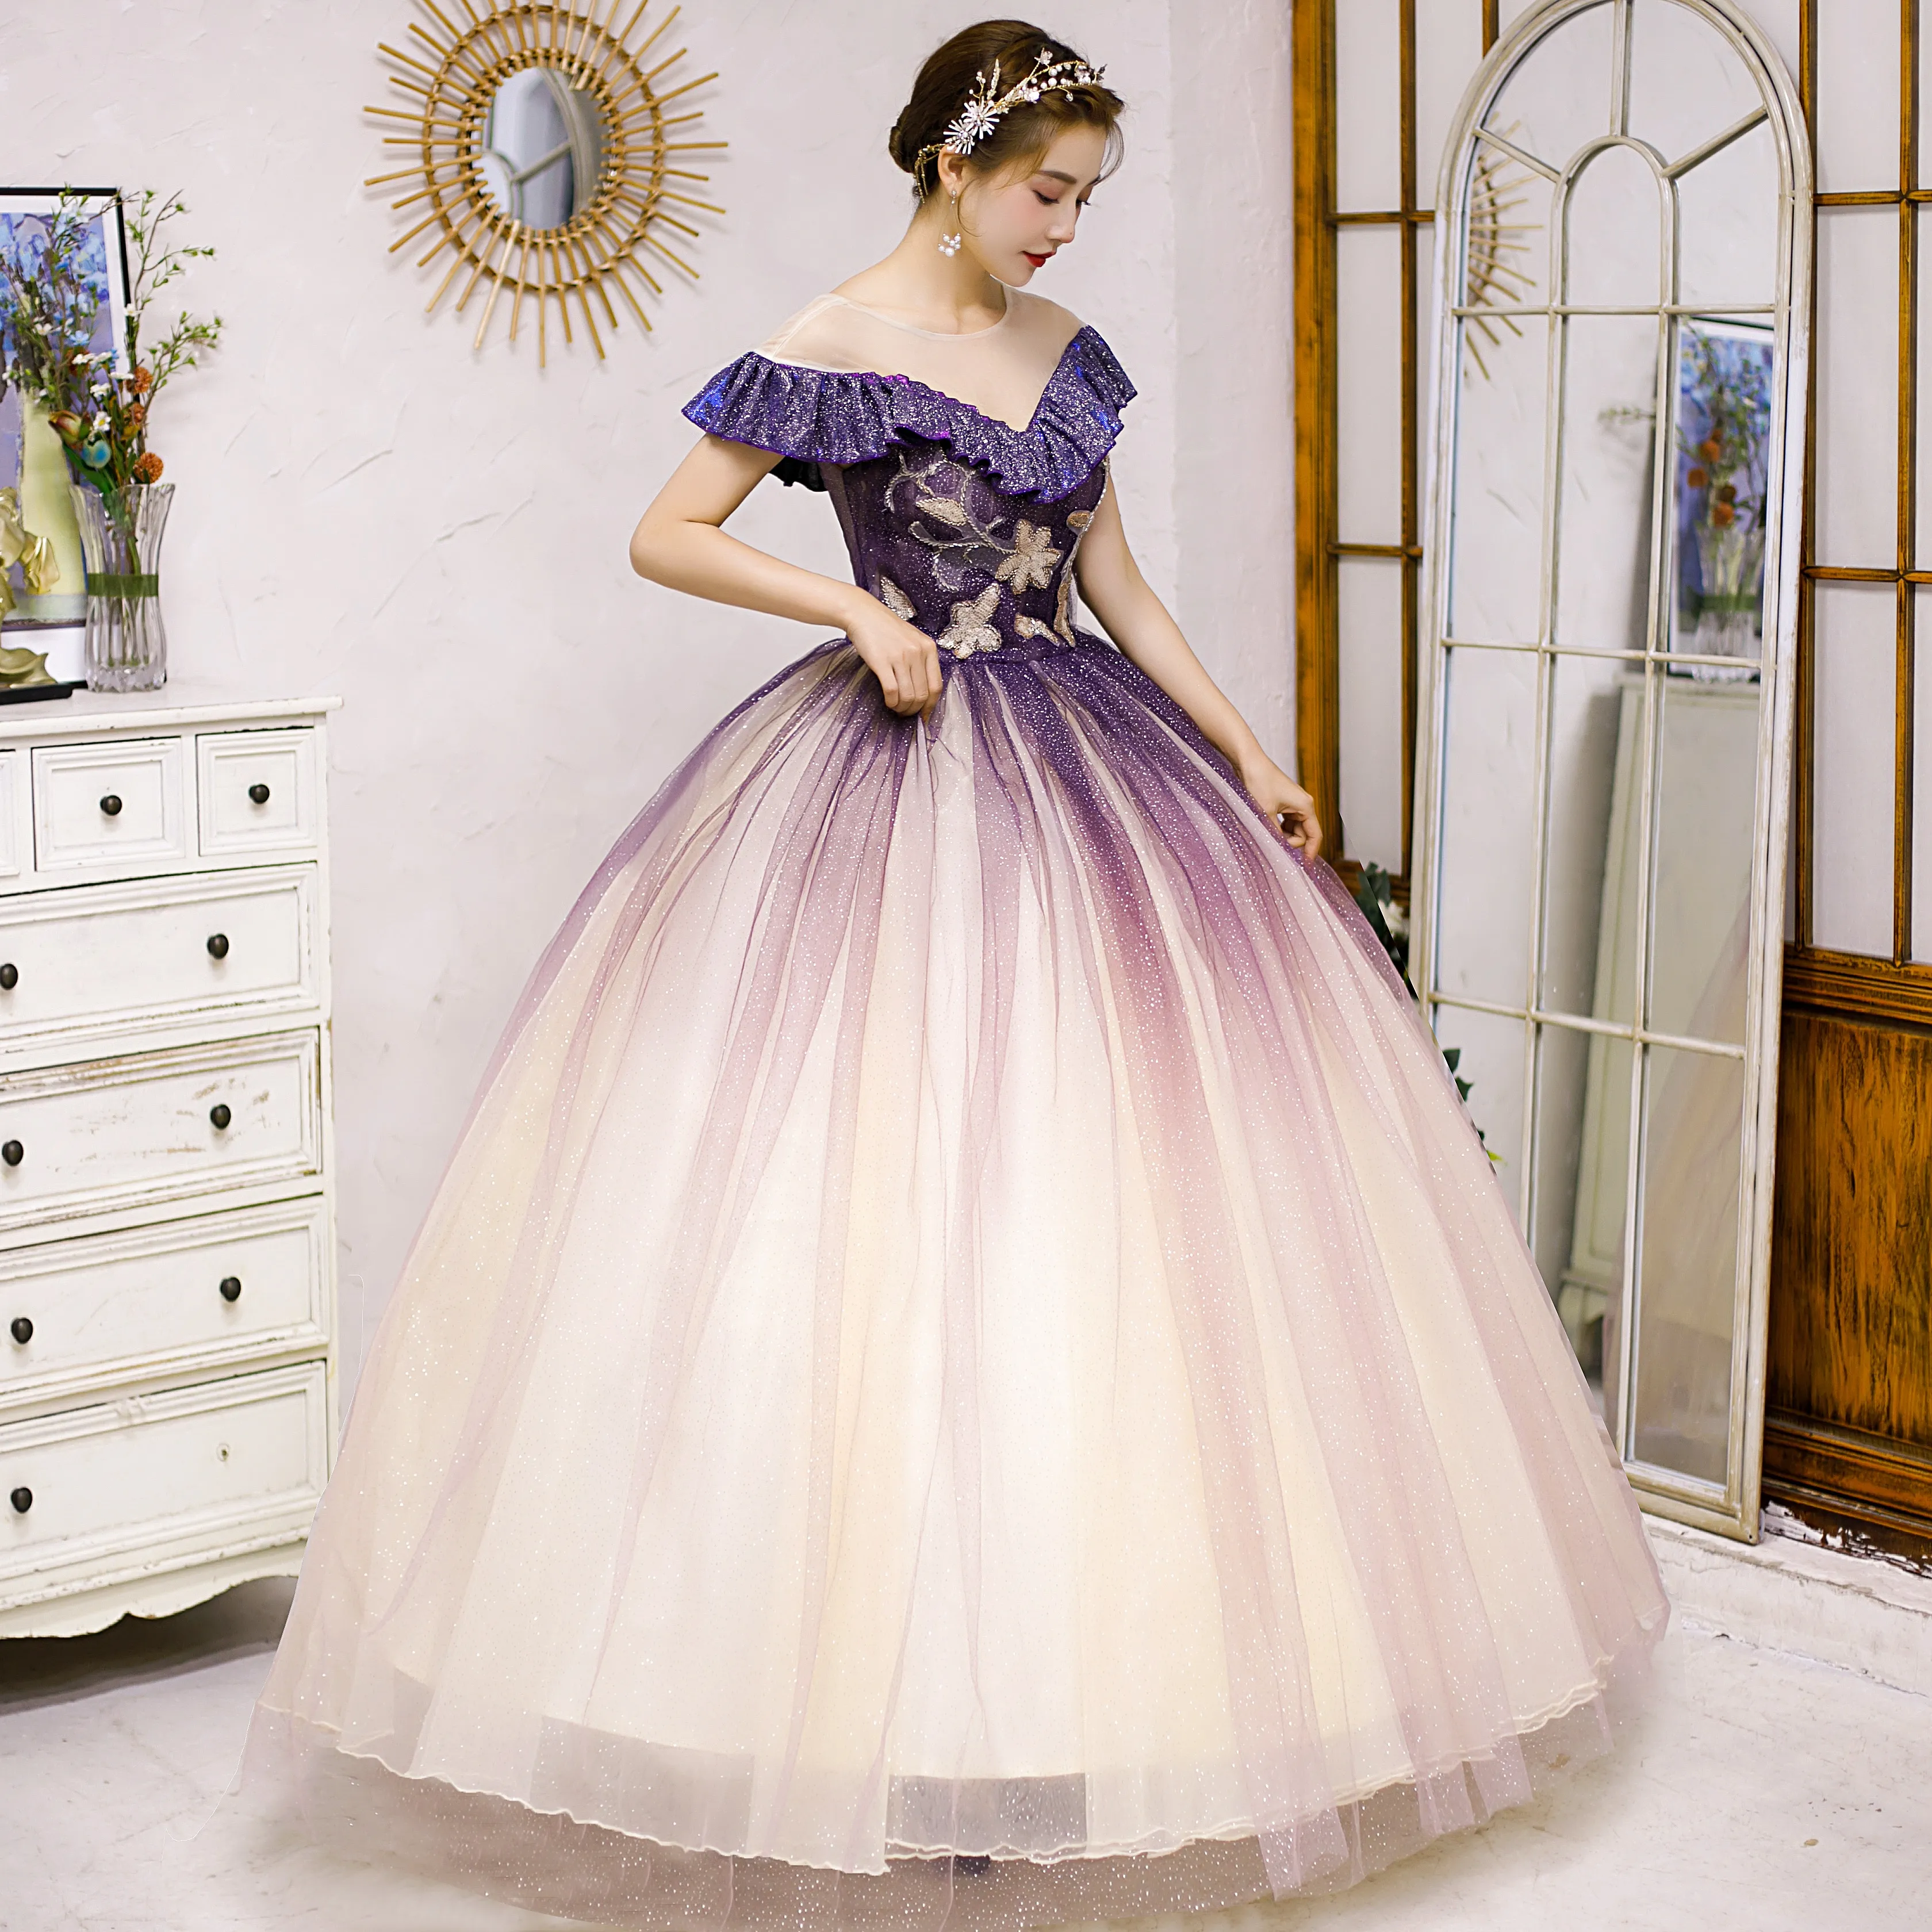 Lavender Girl Dress, Tulle Flower Girl Dress, Princess Dress, Ball Gow